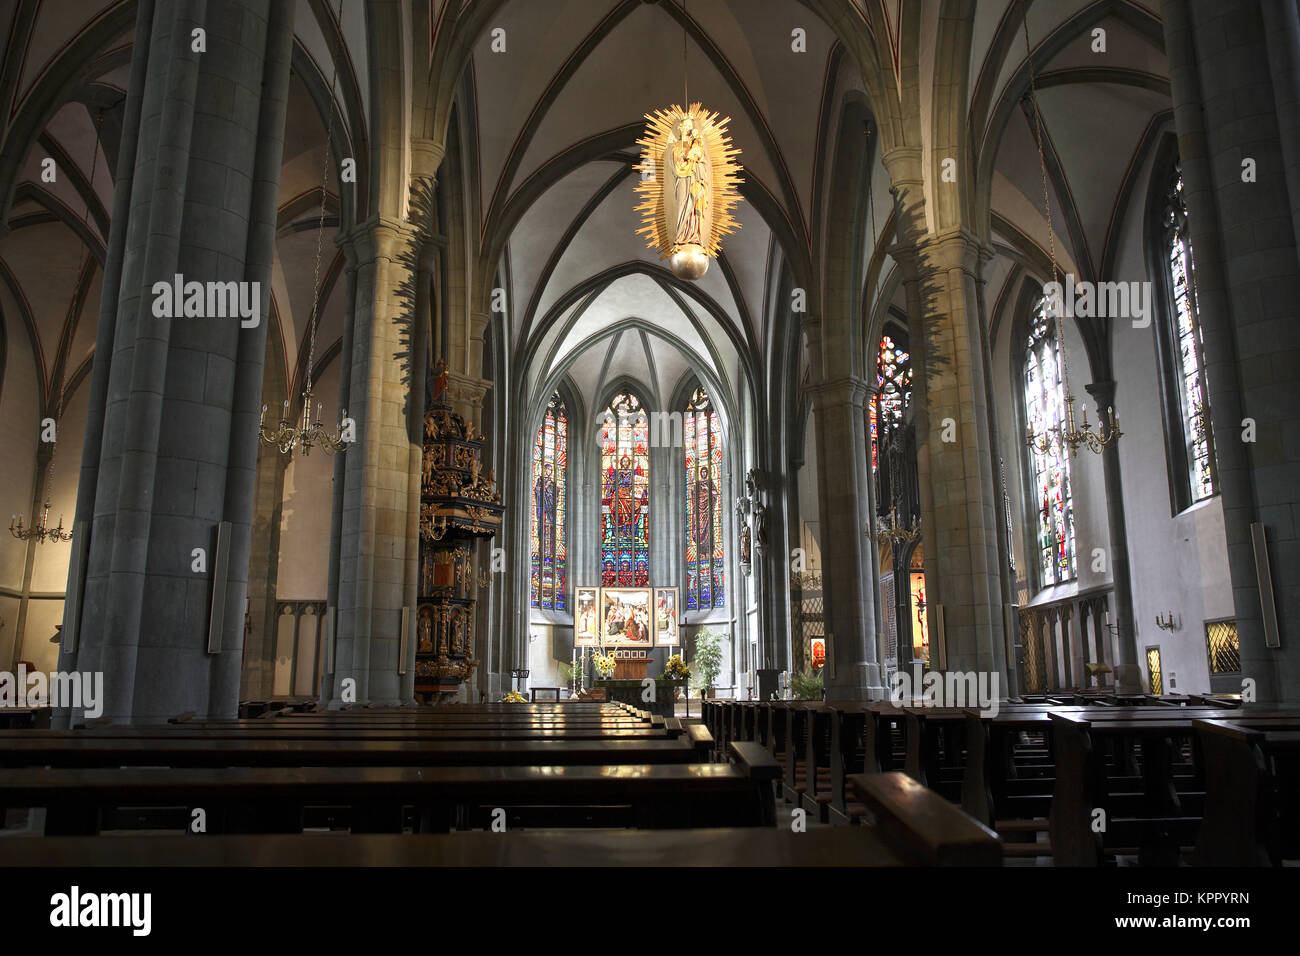 Germania, Werl, chiesa S. Walburga. Deutschland, Werl, Propsteikirche St. Walburga. Foto Stock